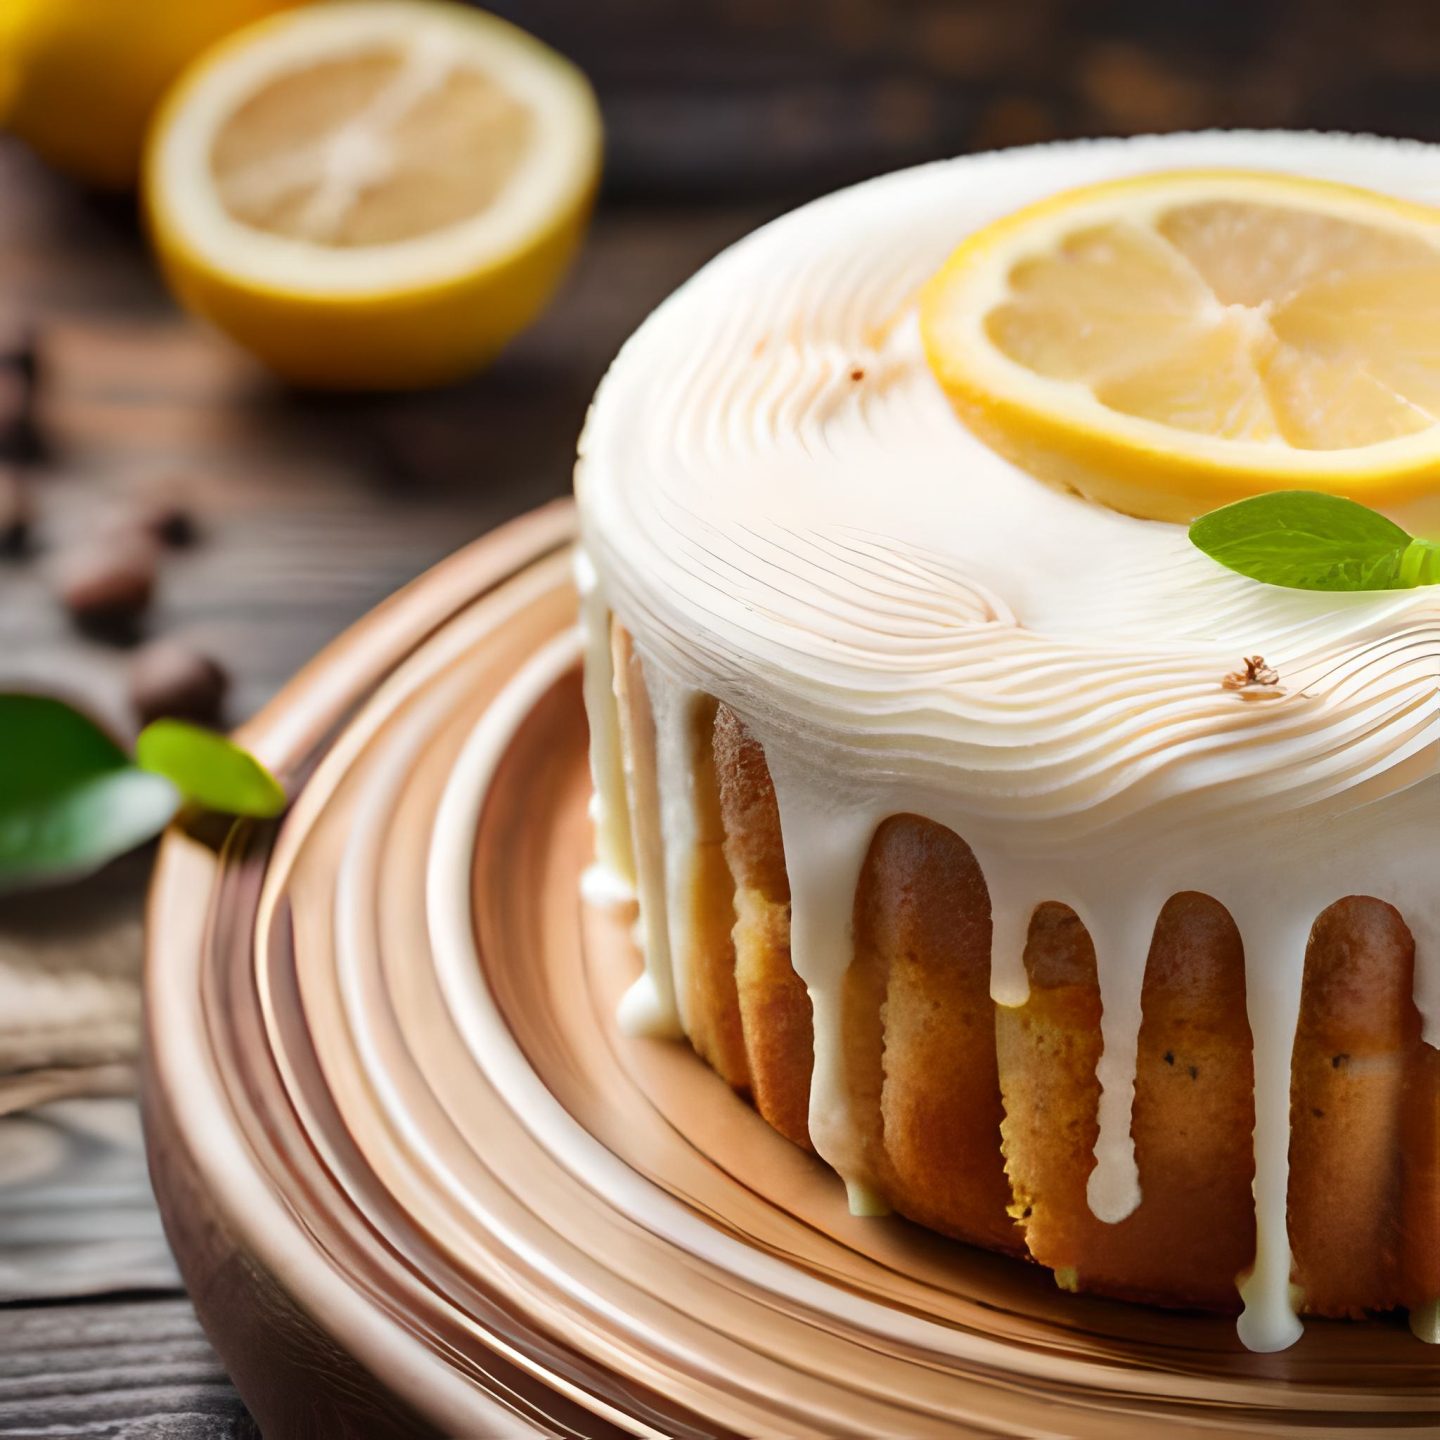 Best homemade lemon cake recipe, Lemon cake with cream cheese icing, Easy lemon cake for beginners, Gluten-free lemon cake recipe, Lemon pound cake for sale, Moist lemon cake from scratch, Lemon bundt cake with lemon glaze, Healthy lemon cake alternatives, Lemon sheet cake for a crowd, Low-sugar lemon cake recipe, Lemon drizzle cake step-by-step, Vegan lemon cake ingredients, Classic lemon cake nostalgia, Lemon cake delivery near me, Lemon cake for special occasions, 